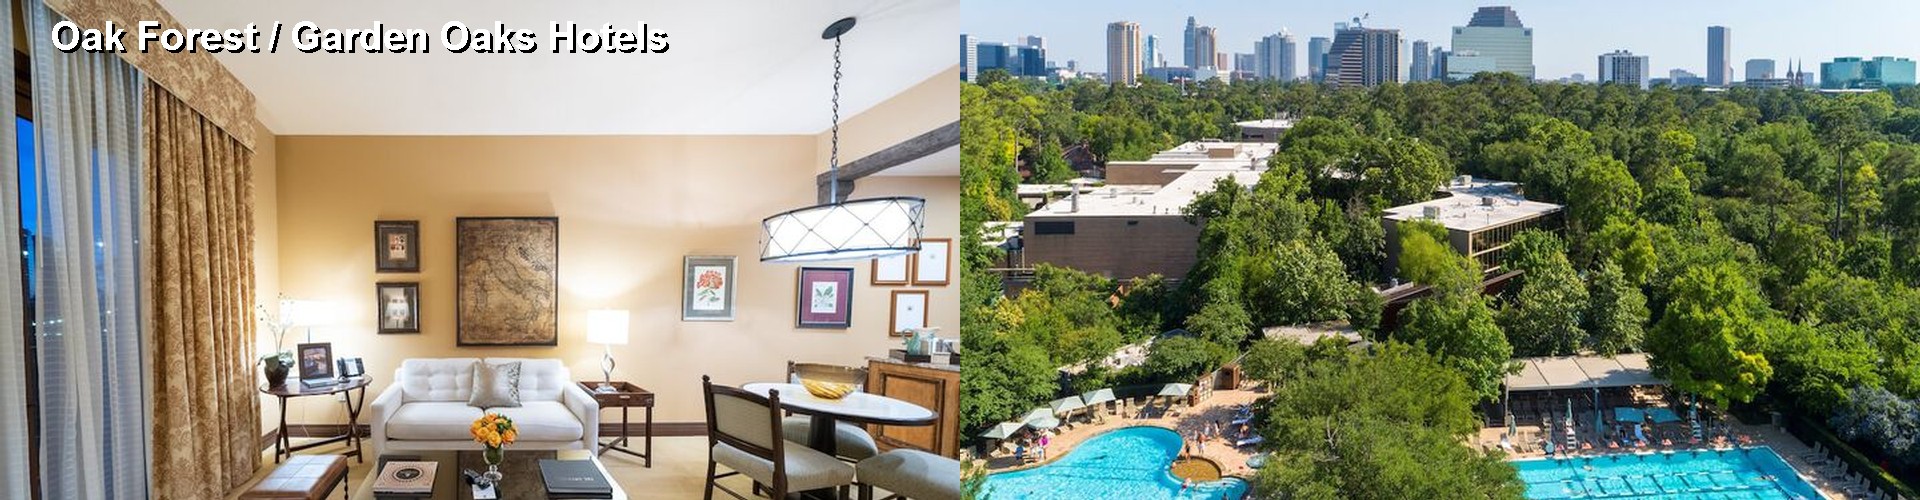 4 Best Hotels near Oak Forest / Garden Oaks